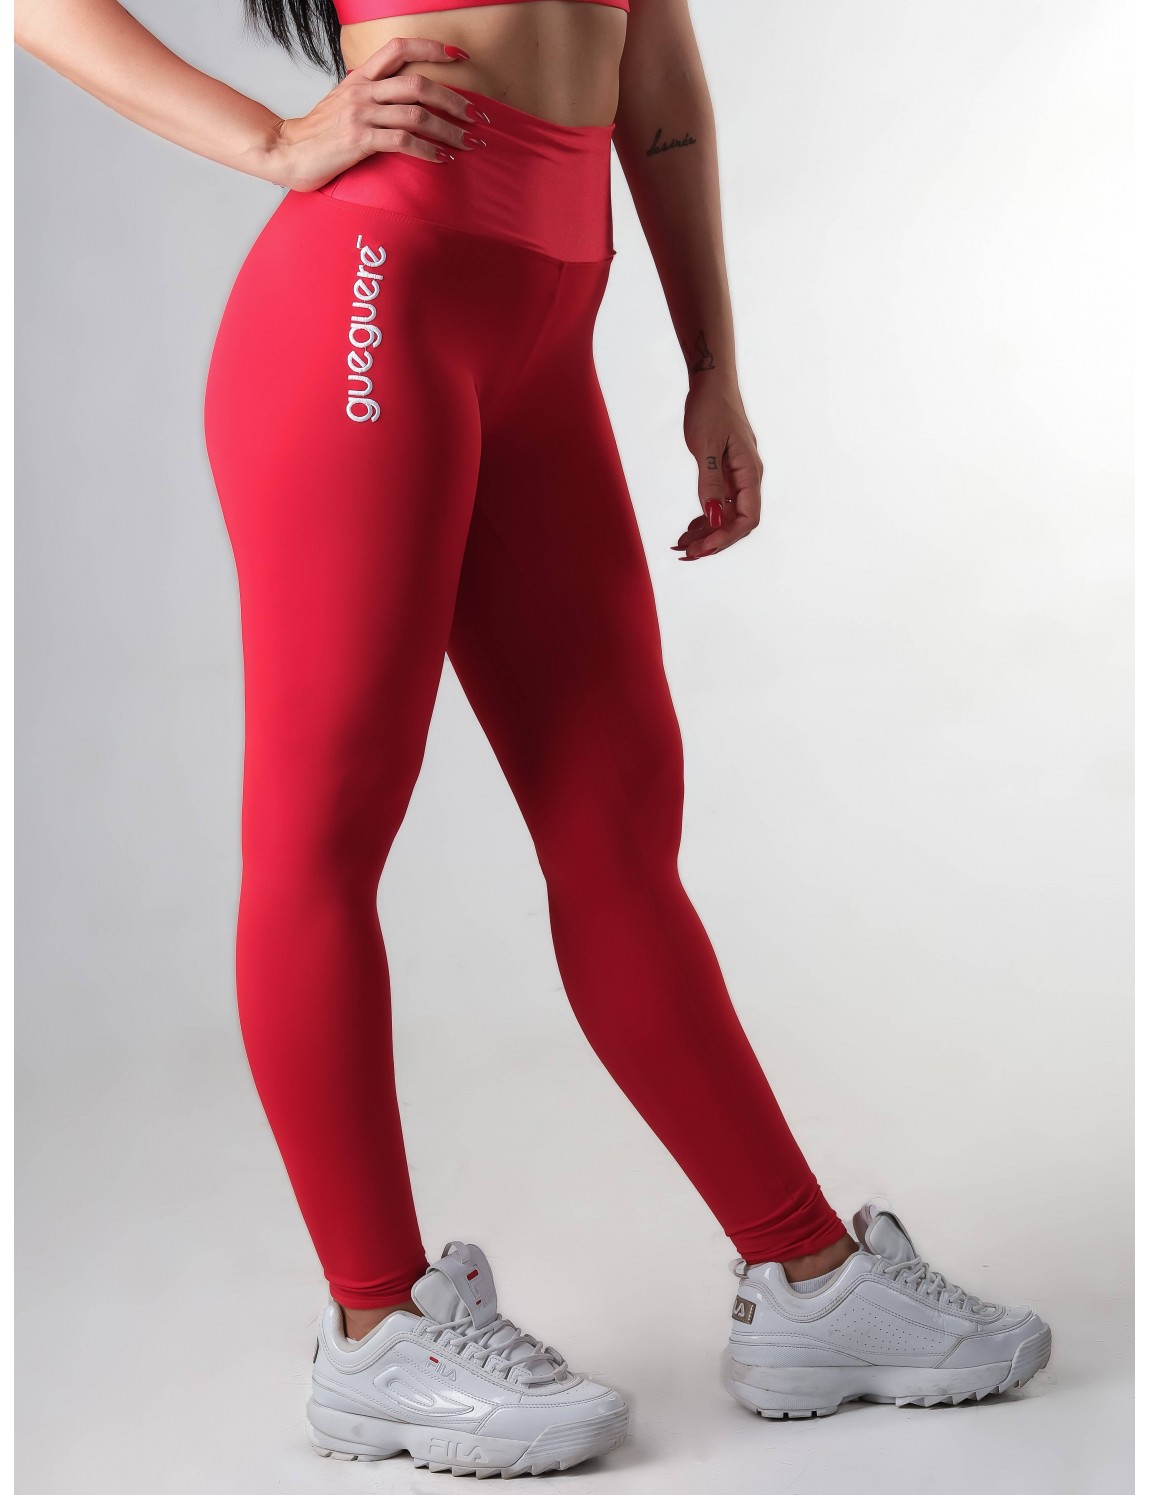  Rojo - Leggings Para Mujer / Ropa De Mujer: Moda